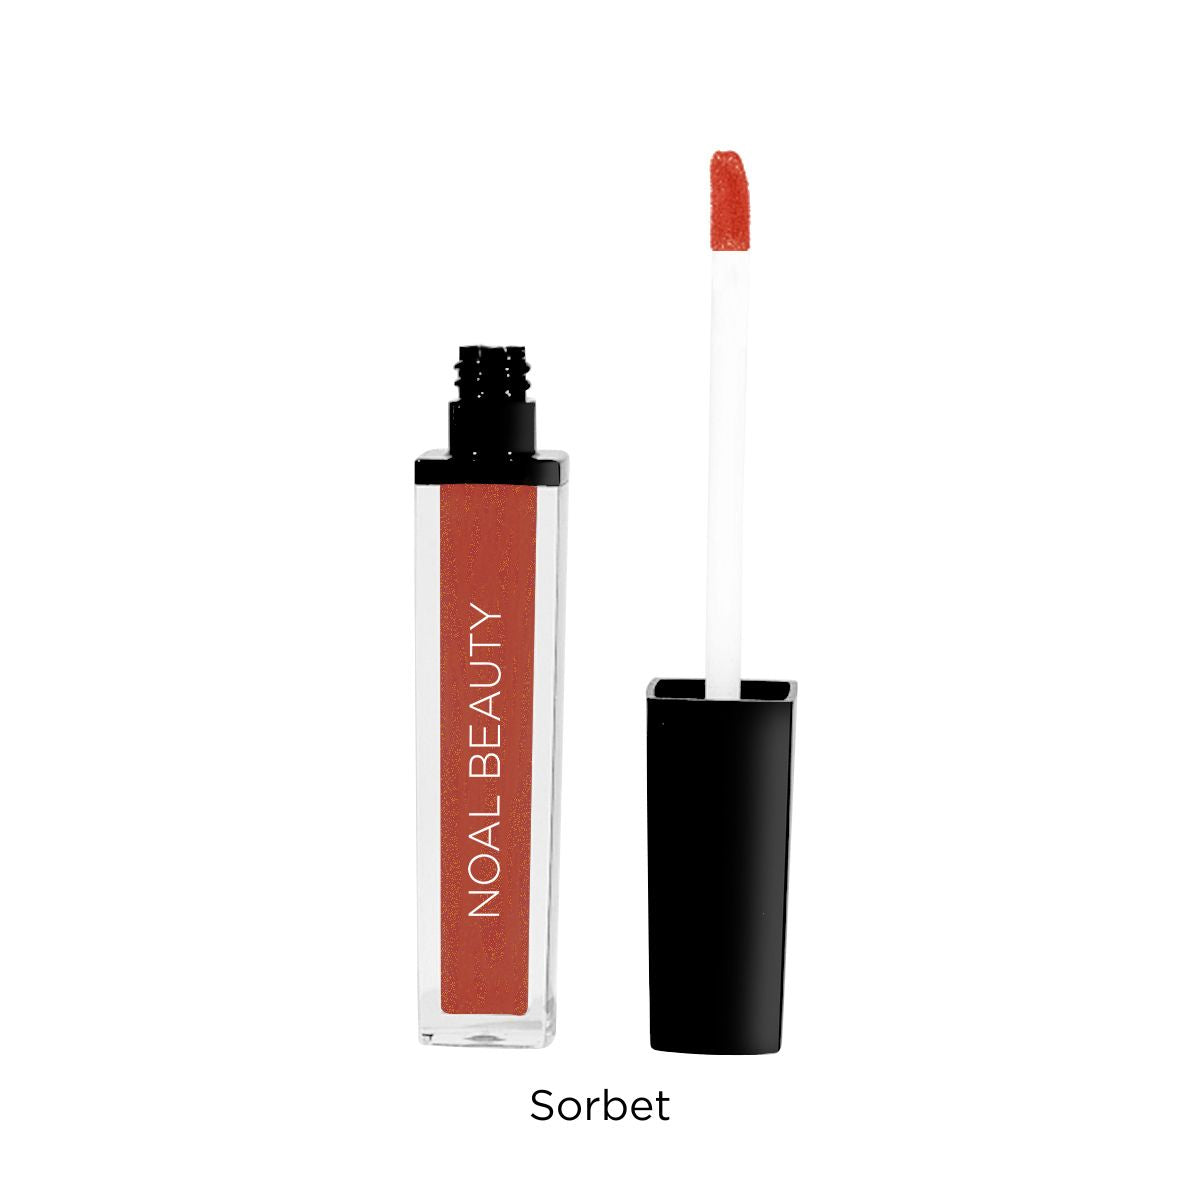 noal-beauty-sorbet-liquid-lip-gloss